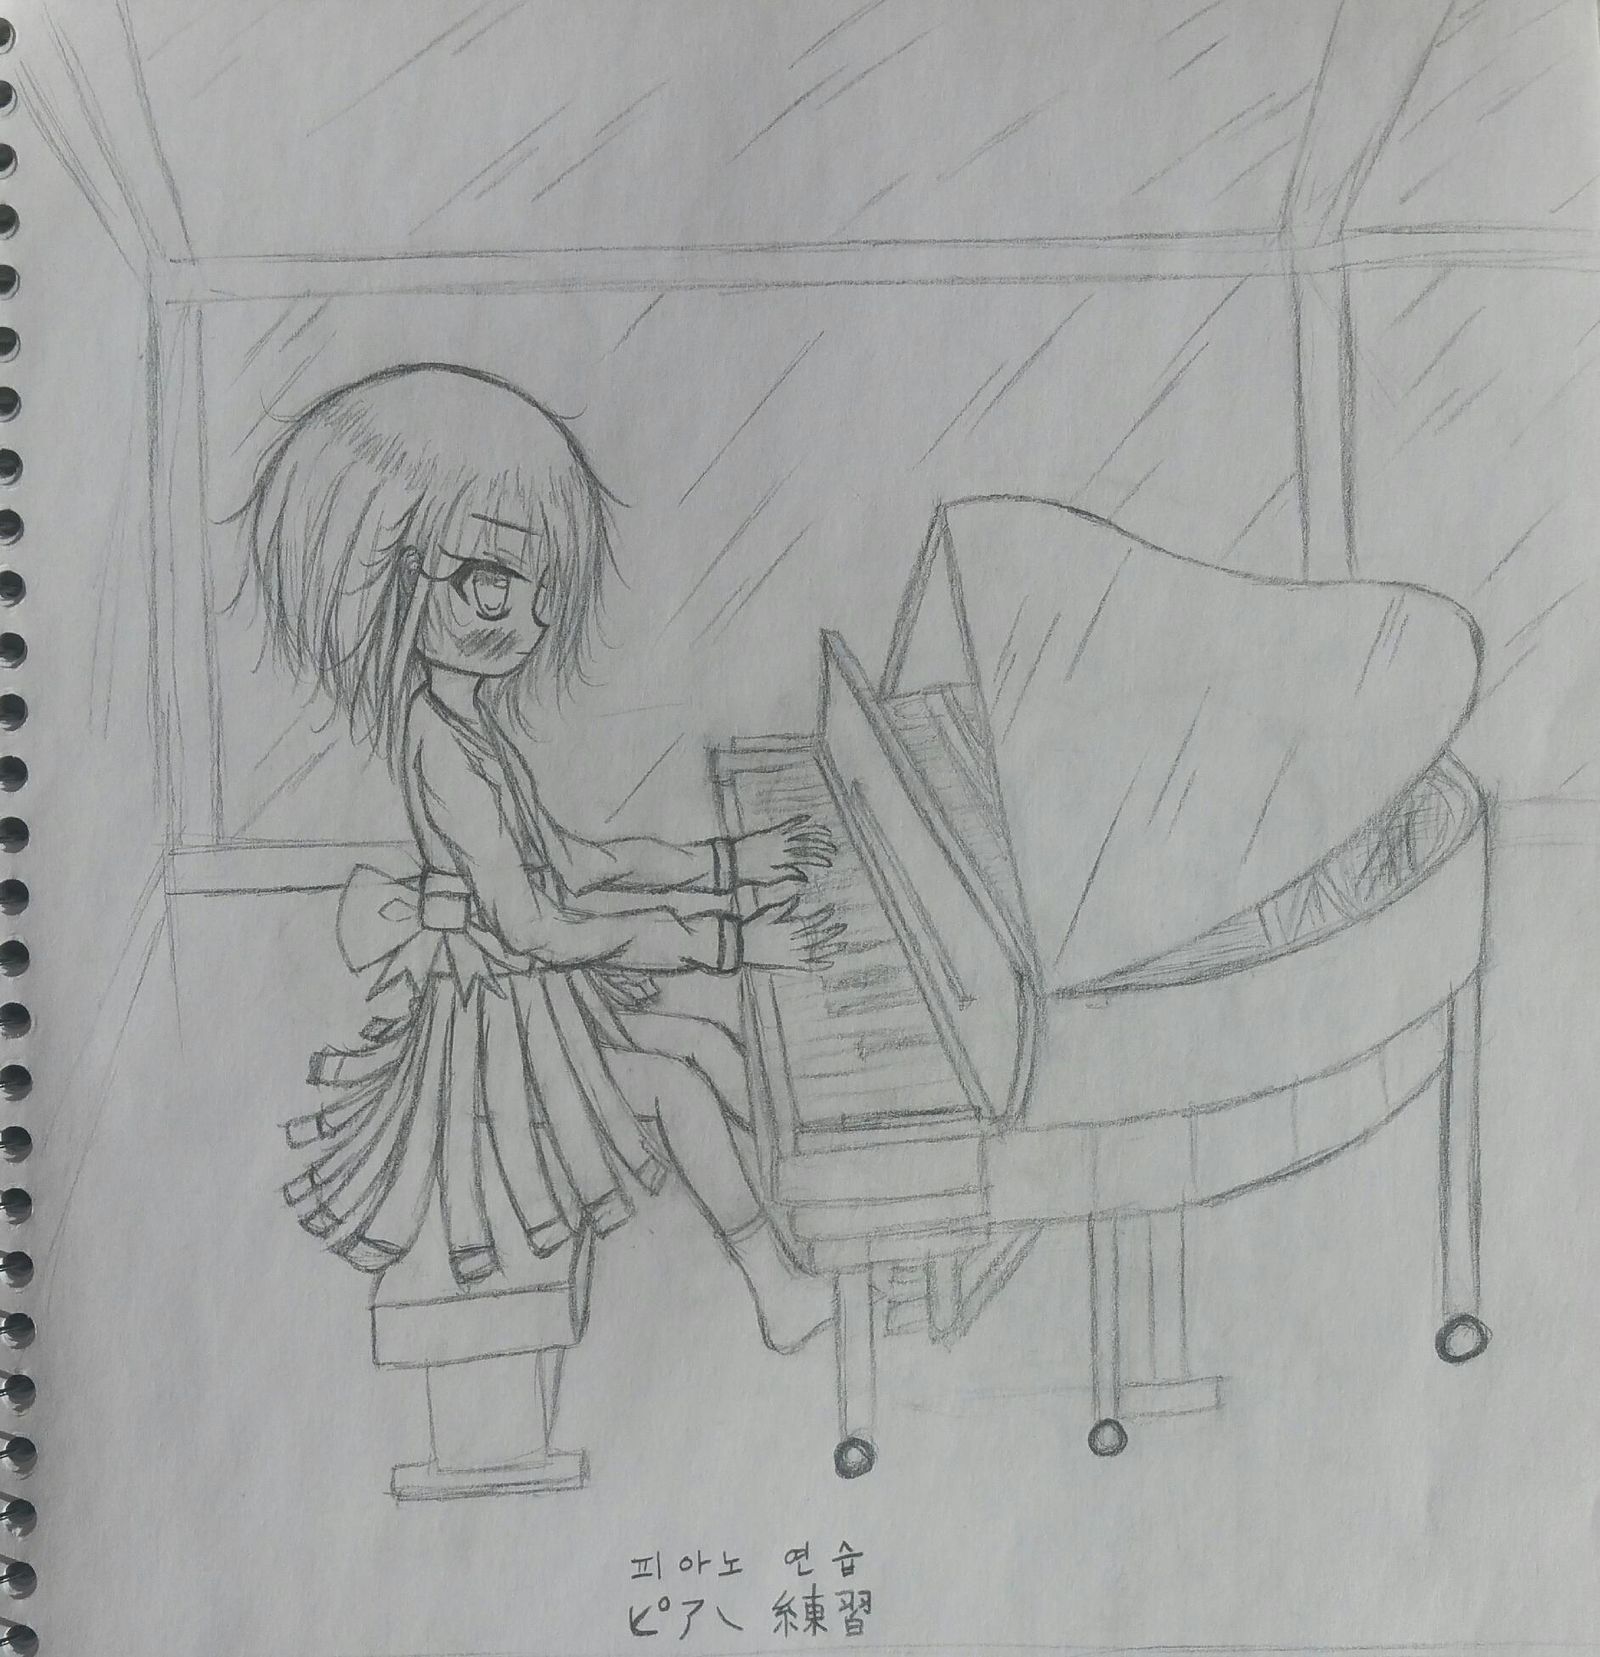 正在练习钢琴的女孩子插画图片壁纸